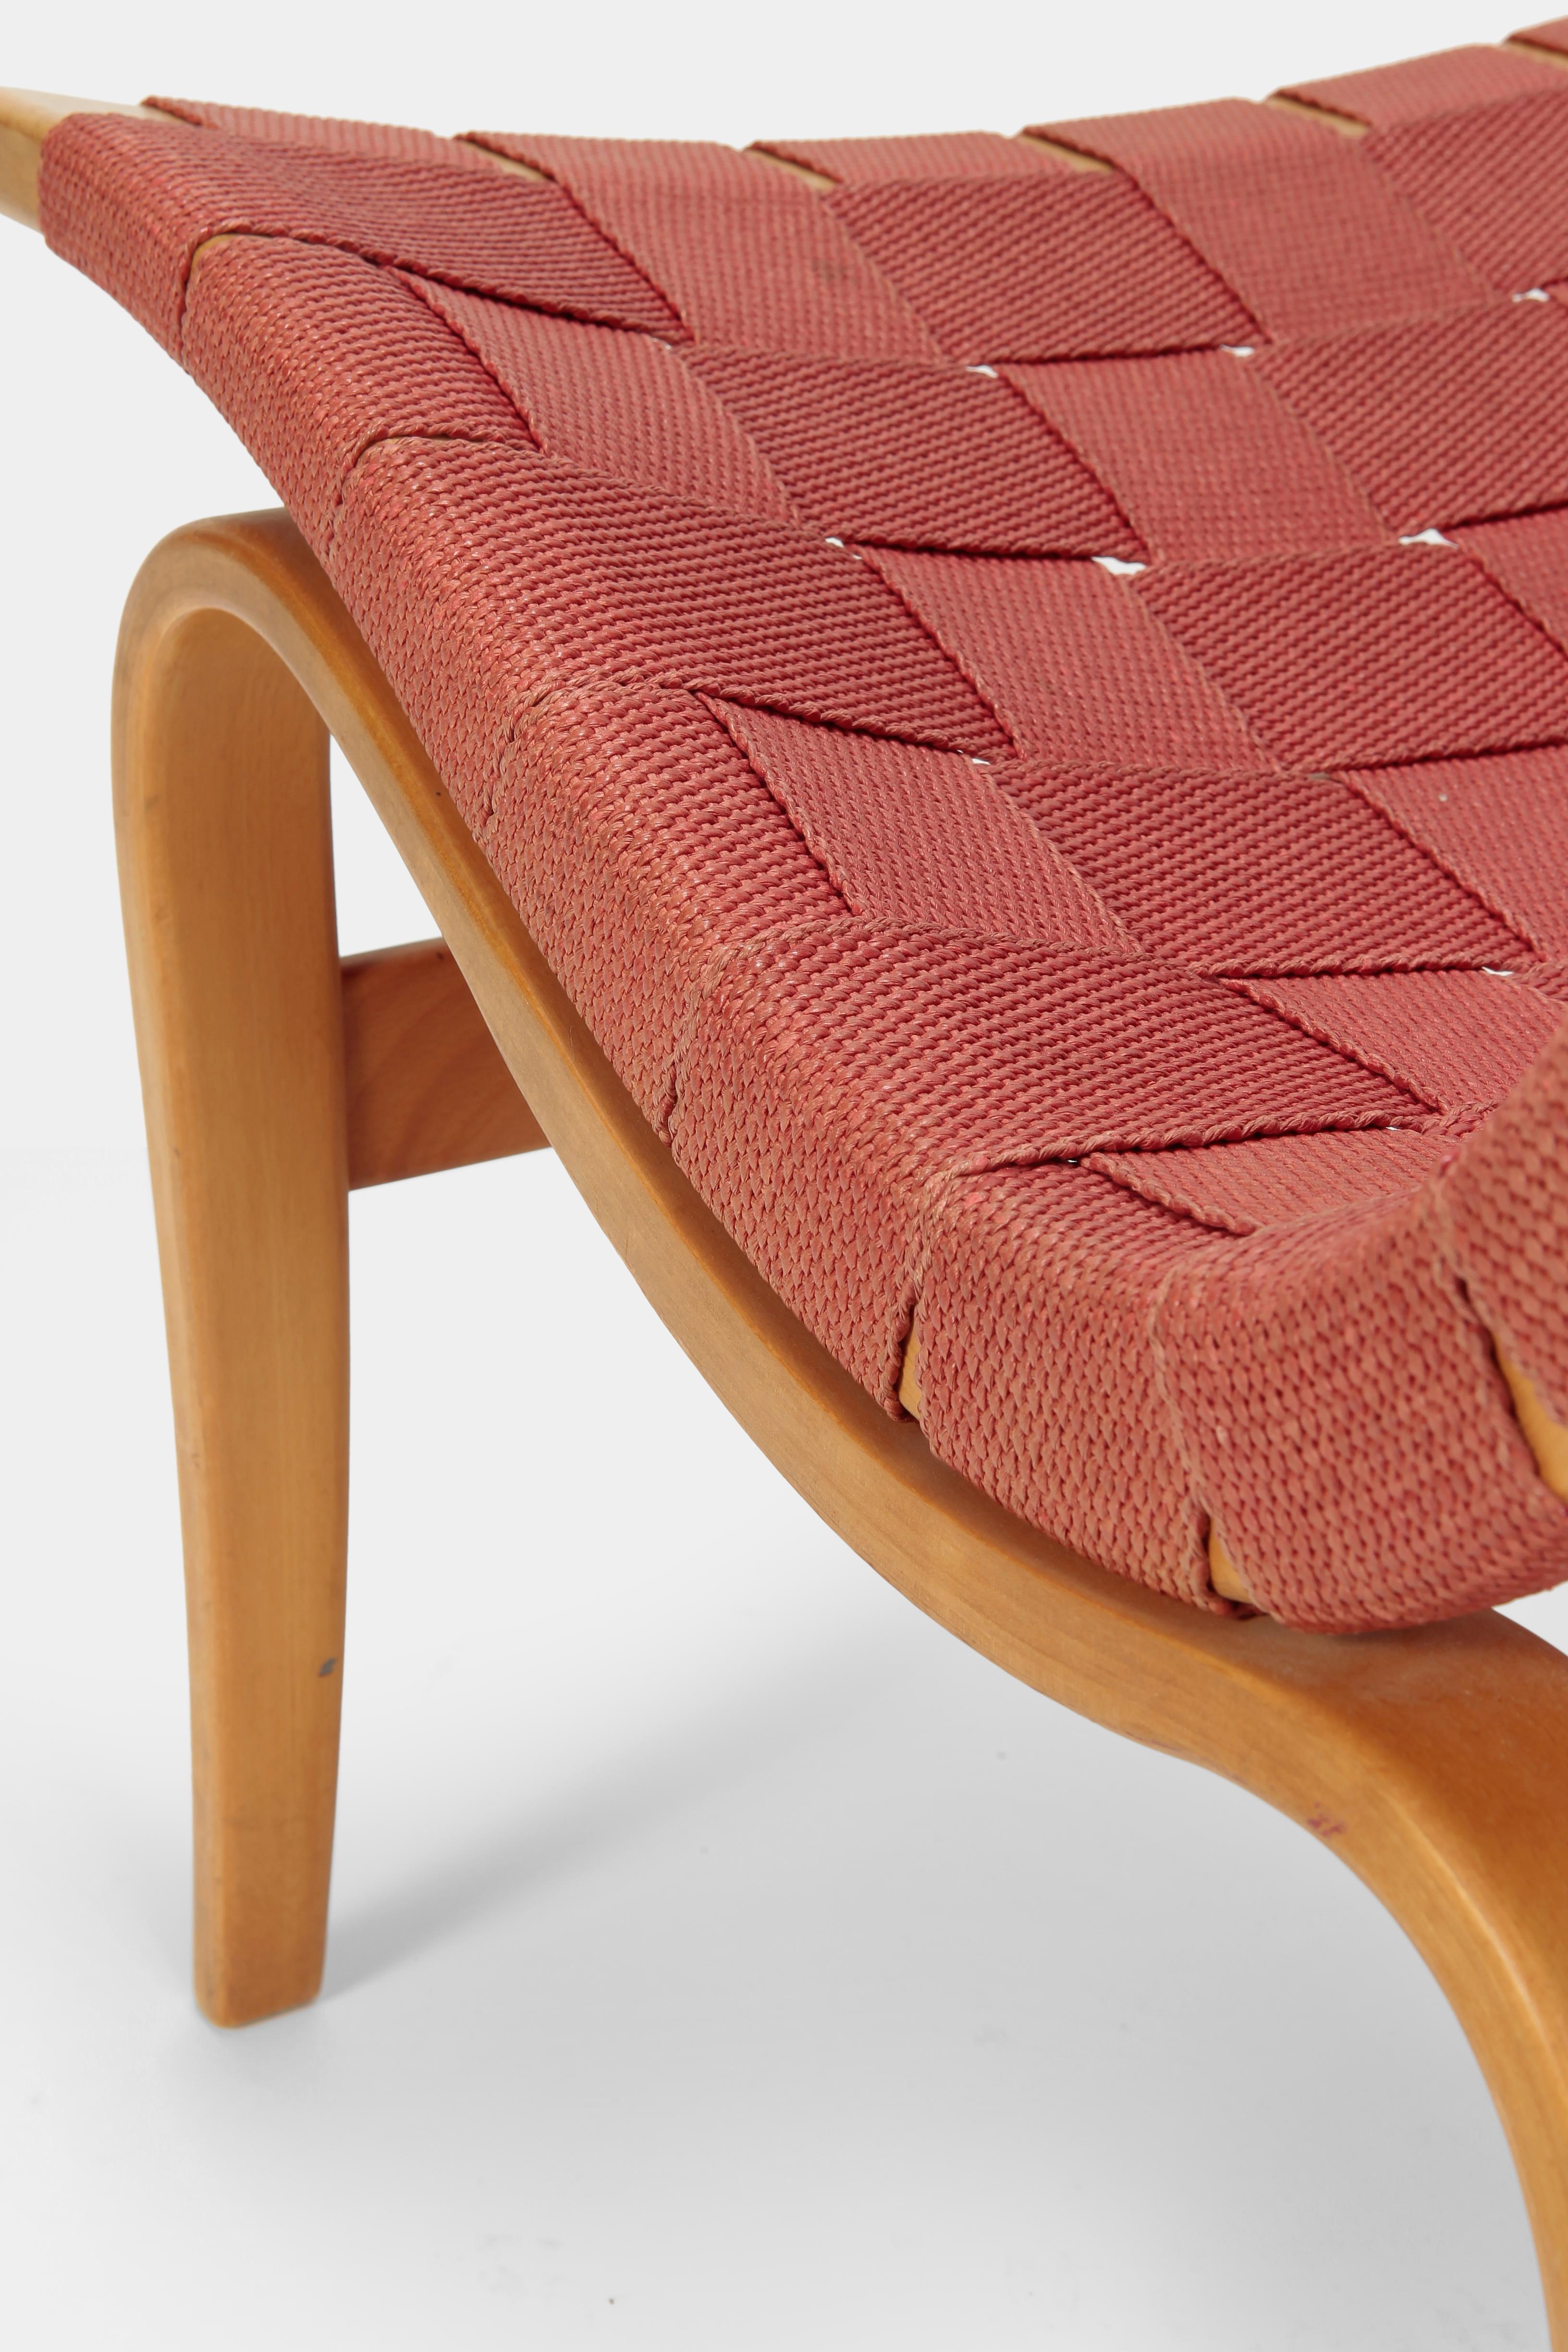 Bruno Mathsson ‘Eva’ Chair 1941 For Sale 3